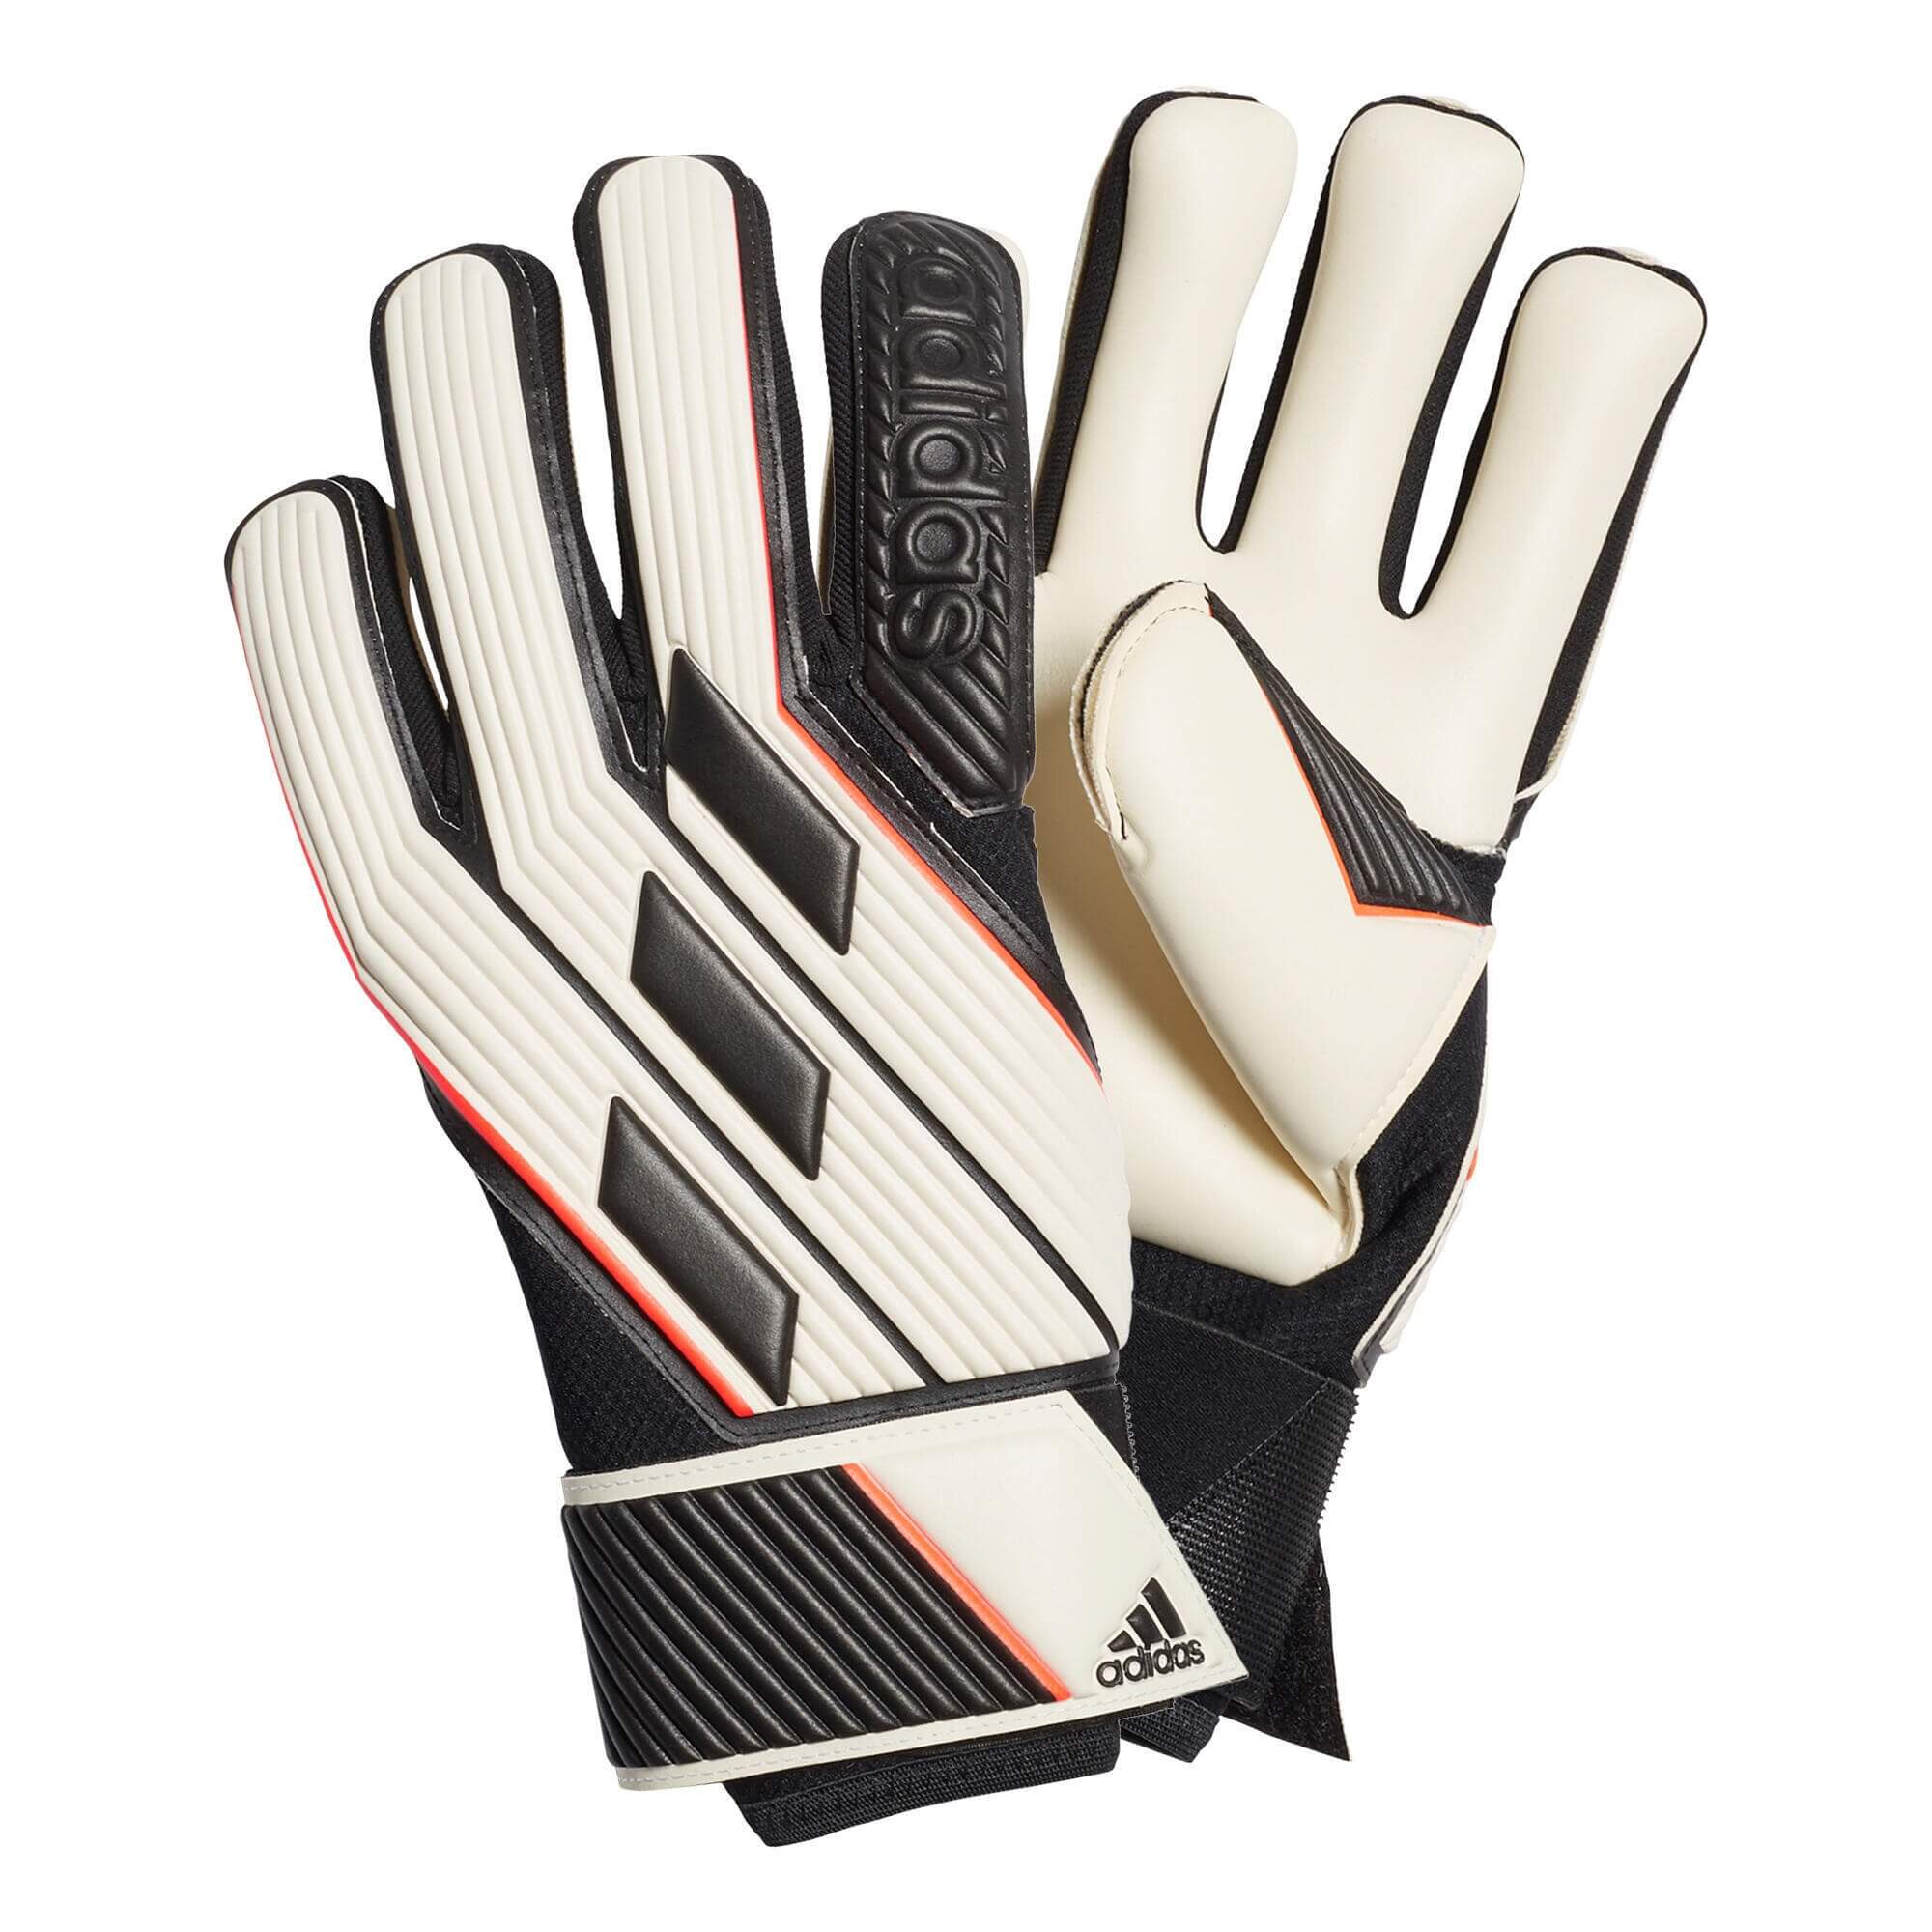 Вратарские перчатки Adidas Tiro Glove Pro, белый/черный перчатки вратарские adidas tiro gl pro gi6380 р р 7 белый